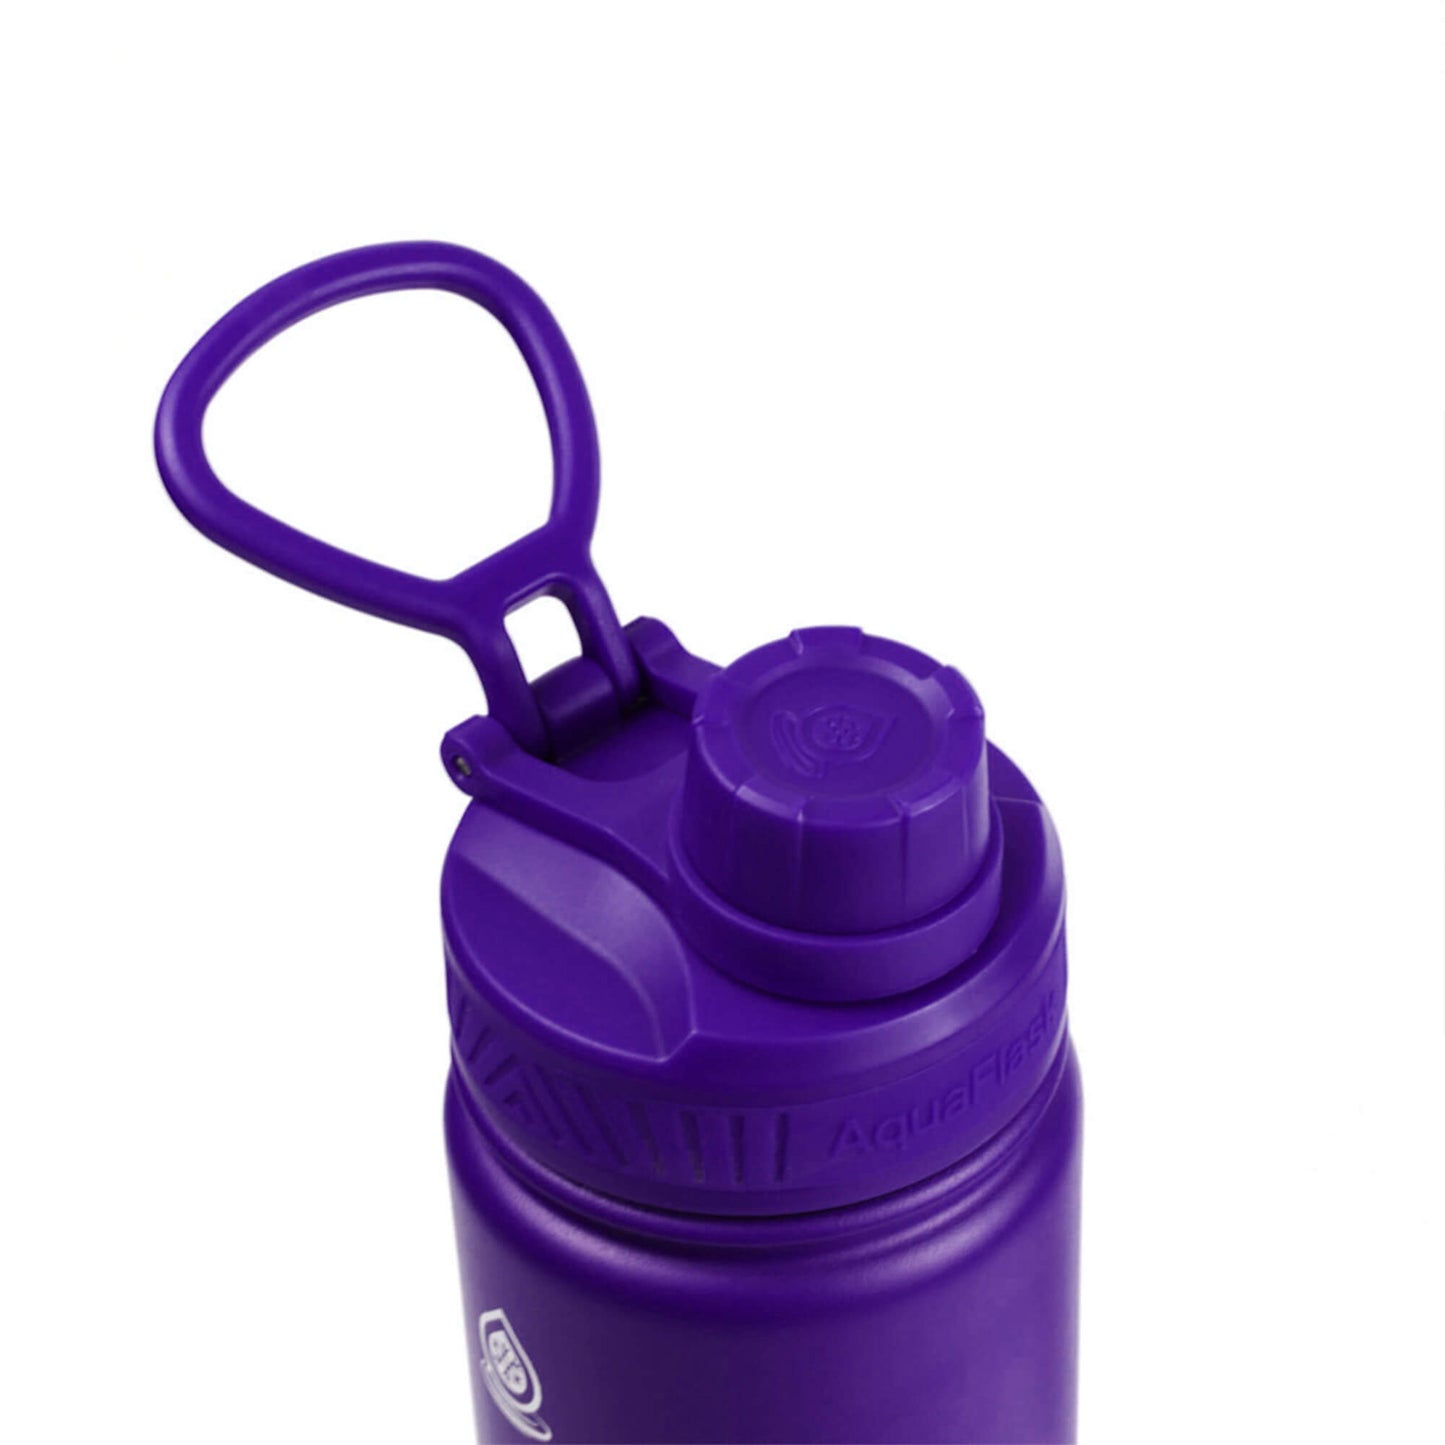 Aquaflask Original Vacuum Insulated Water Bottles 530ml (18oz)